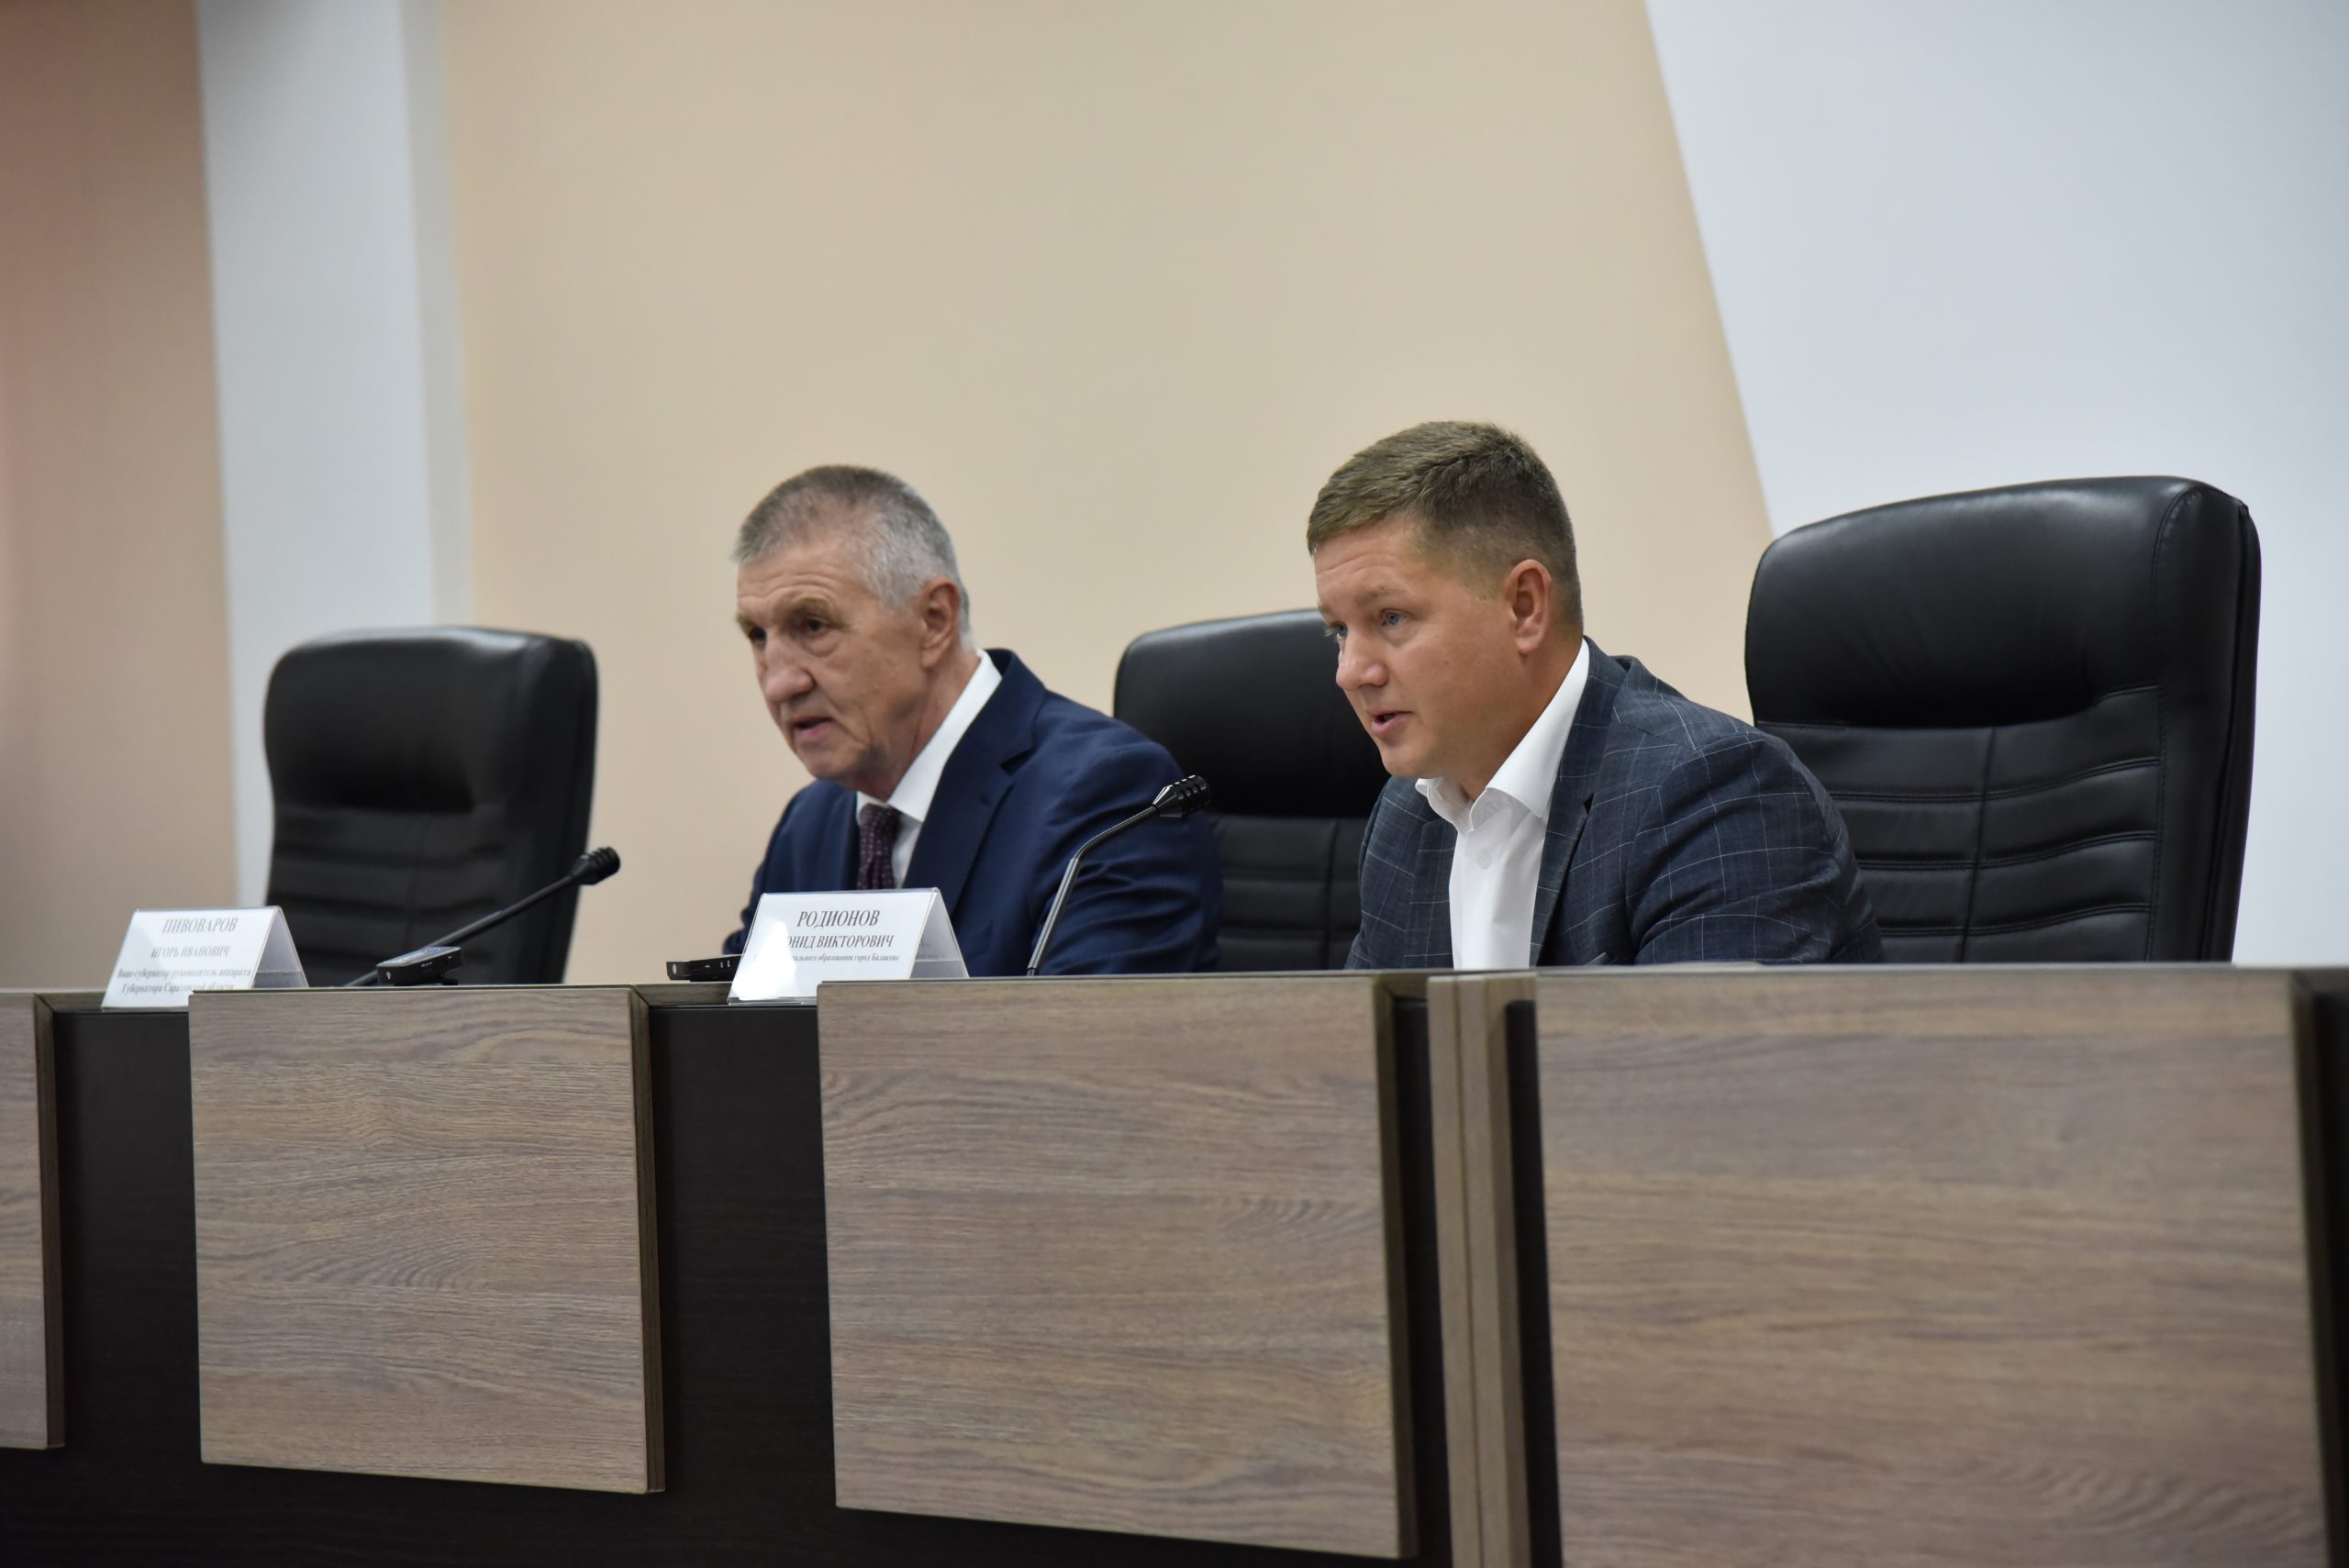 Состоялось внеочередное заседание комитета и внеочередное десятое заседание Совета муниципального образования город Балаково